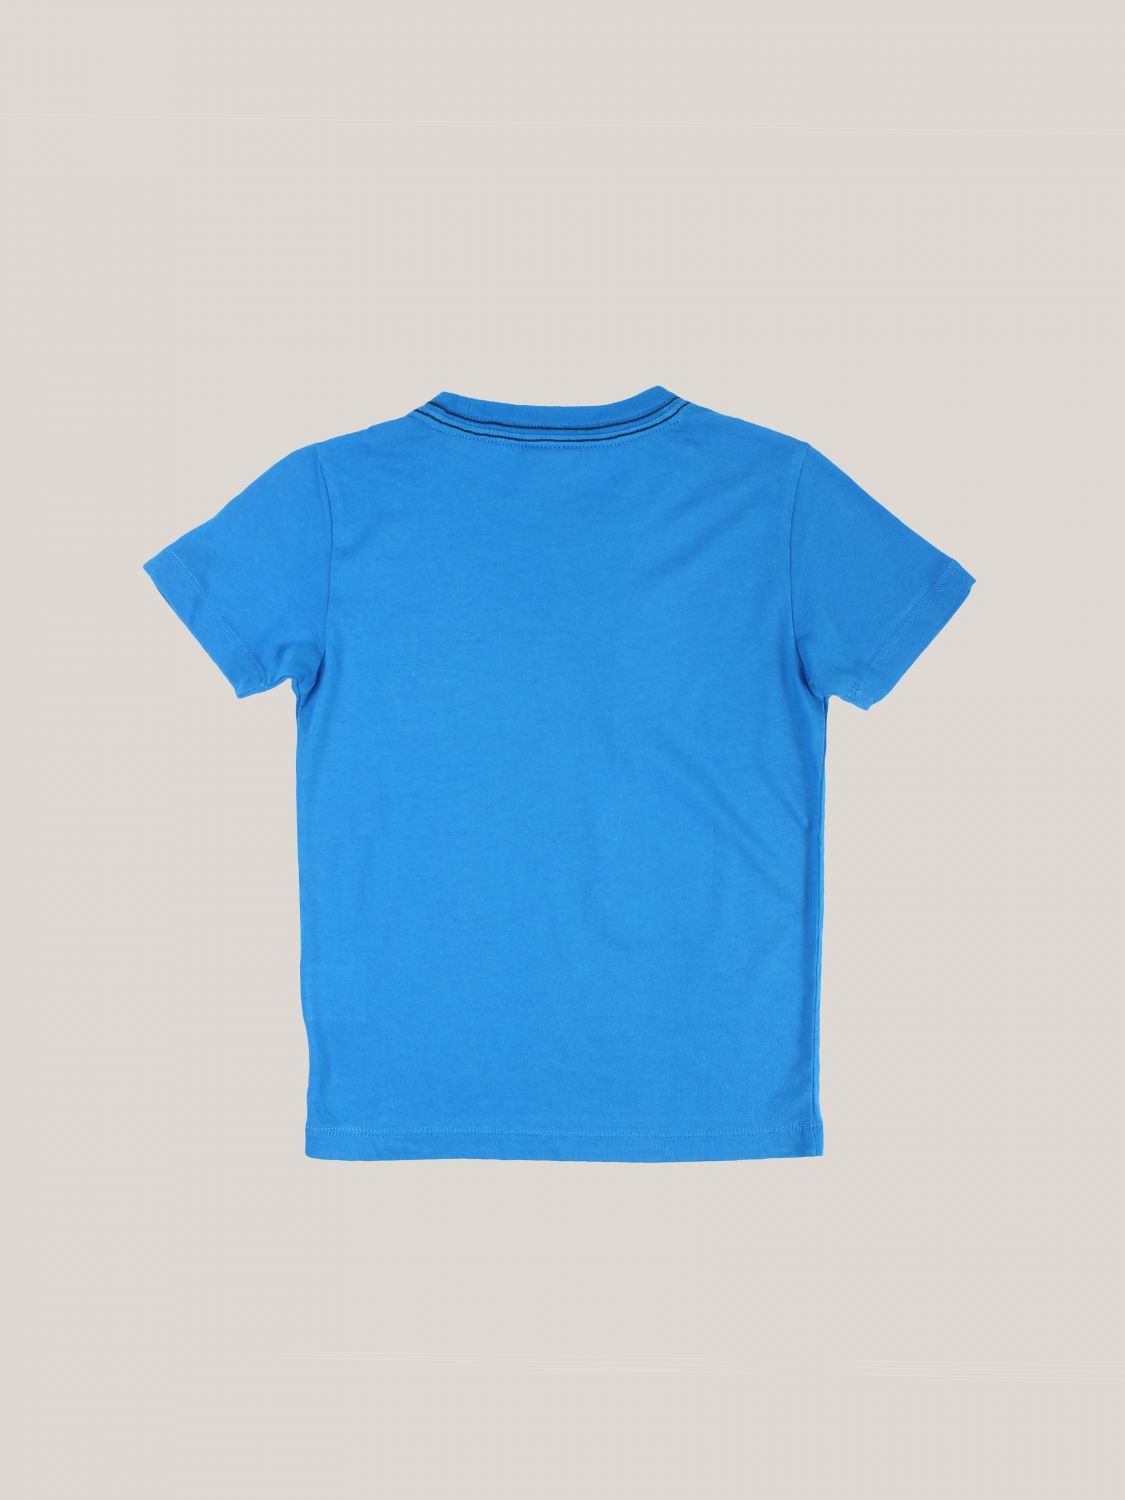 Camiseta Sun 68: Camiseta niños Sun 68 royal blue 2